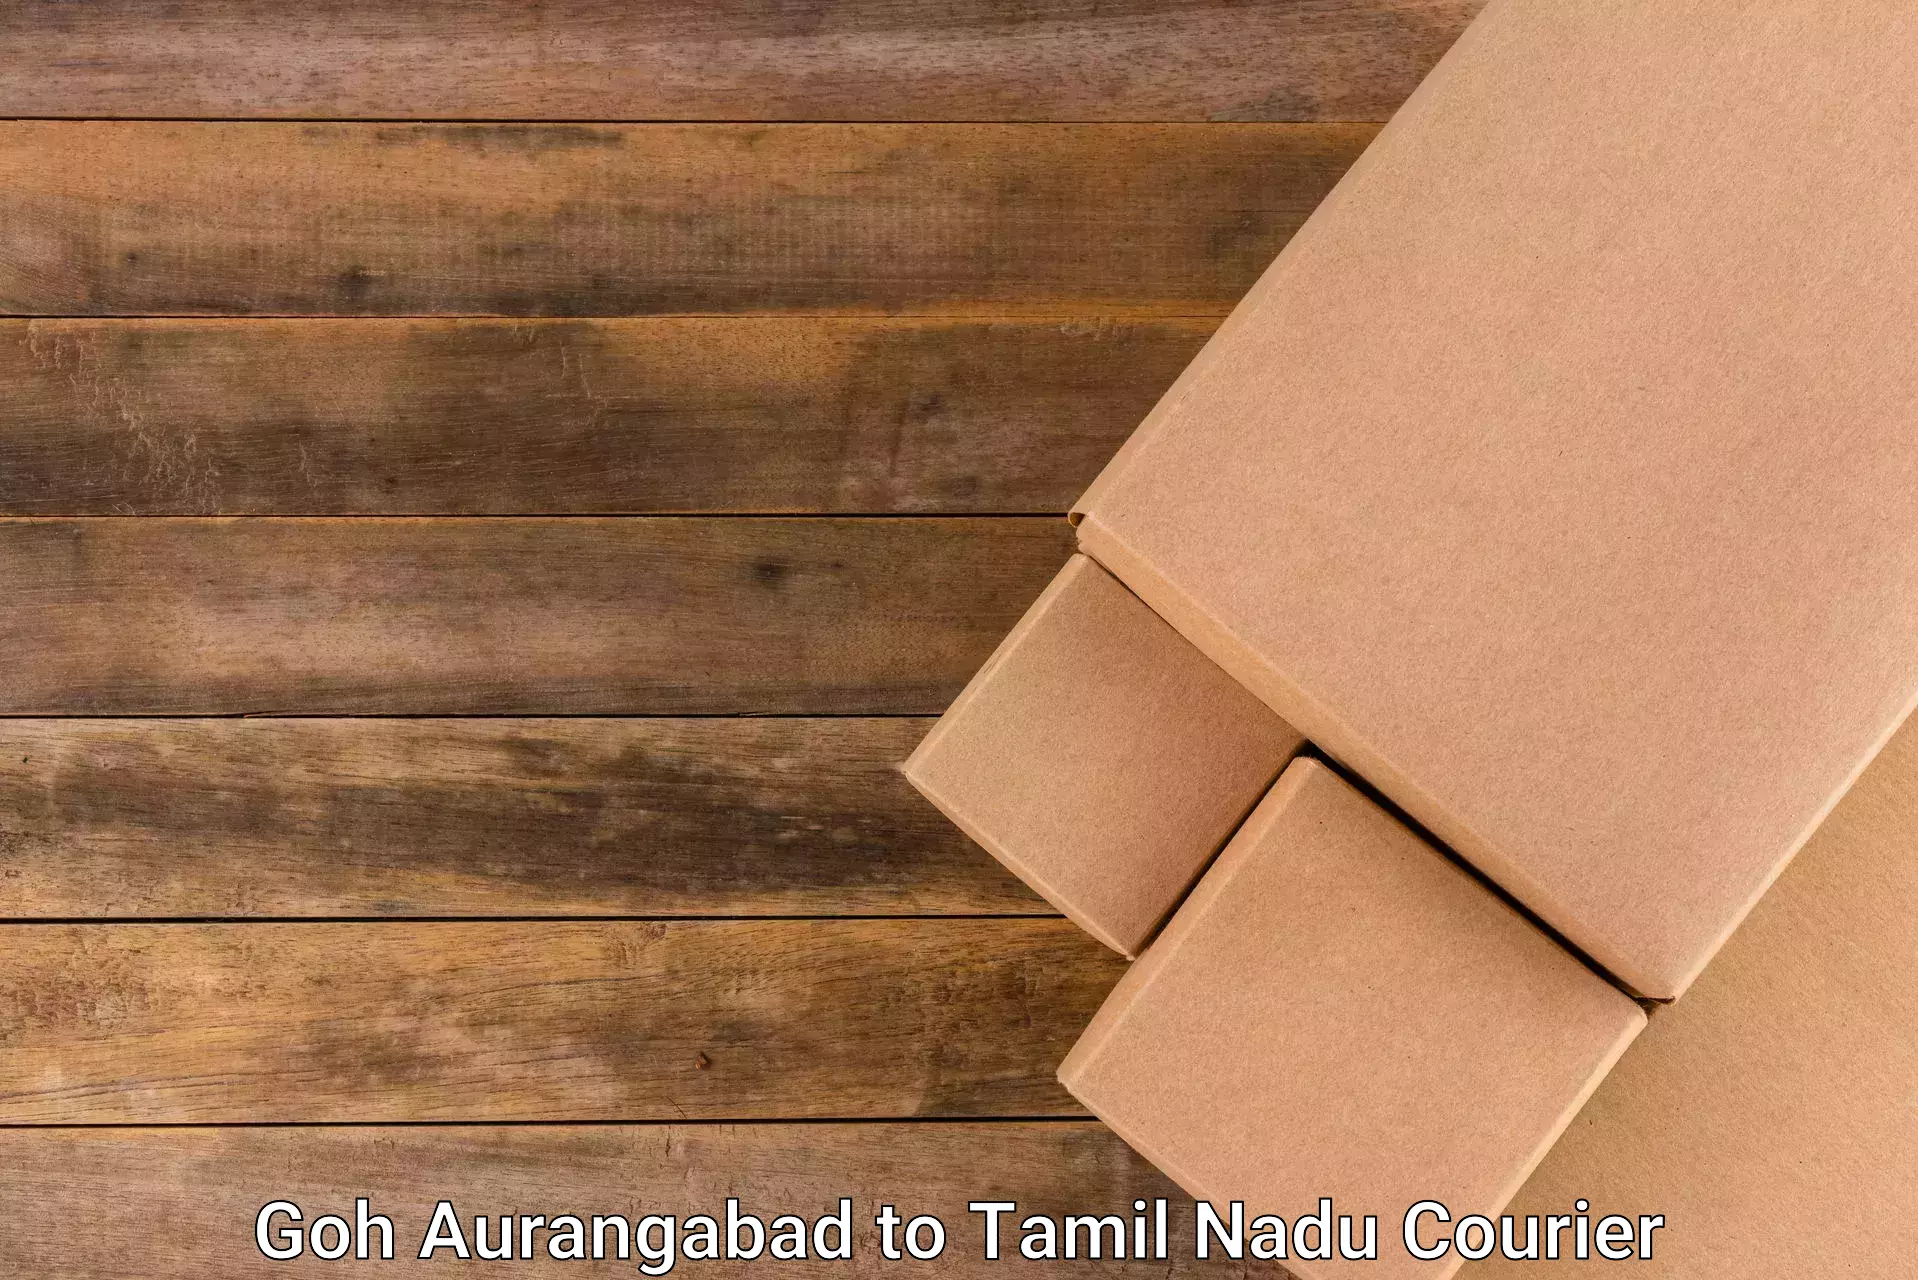 Same-day delivery options in Goh Aurangabad to Tirupattur